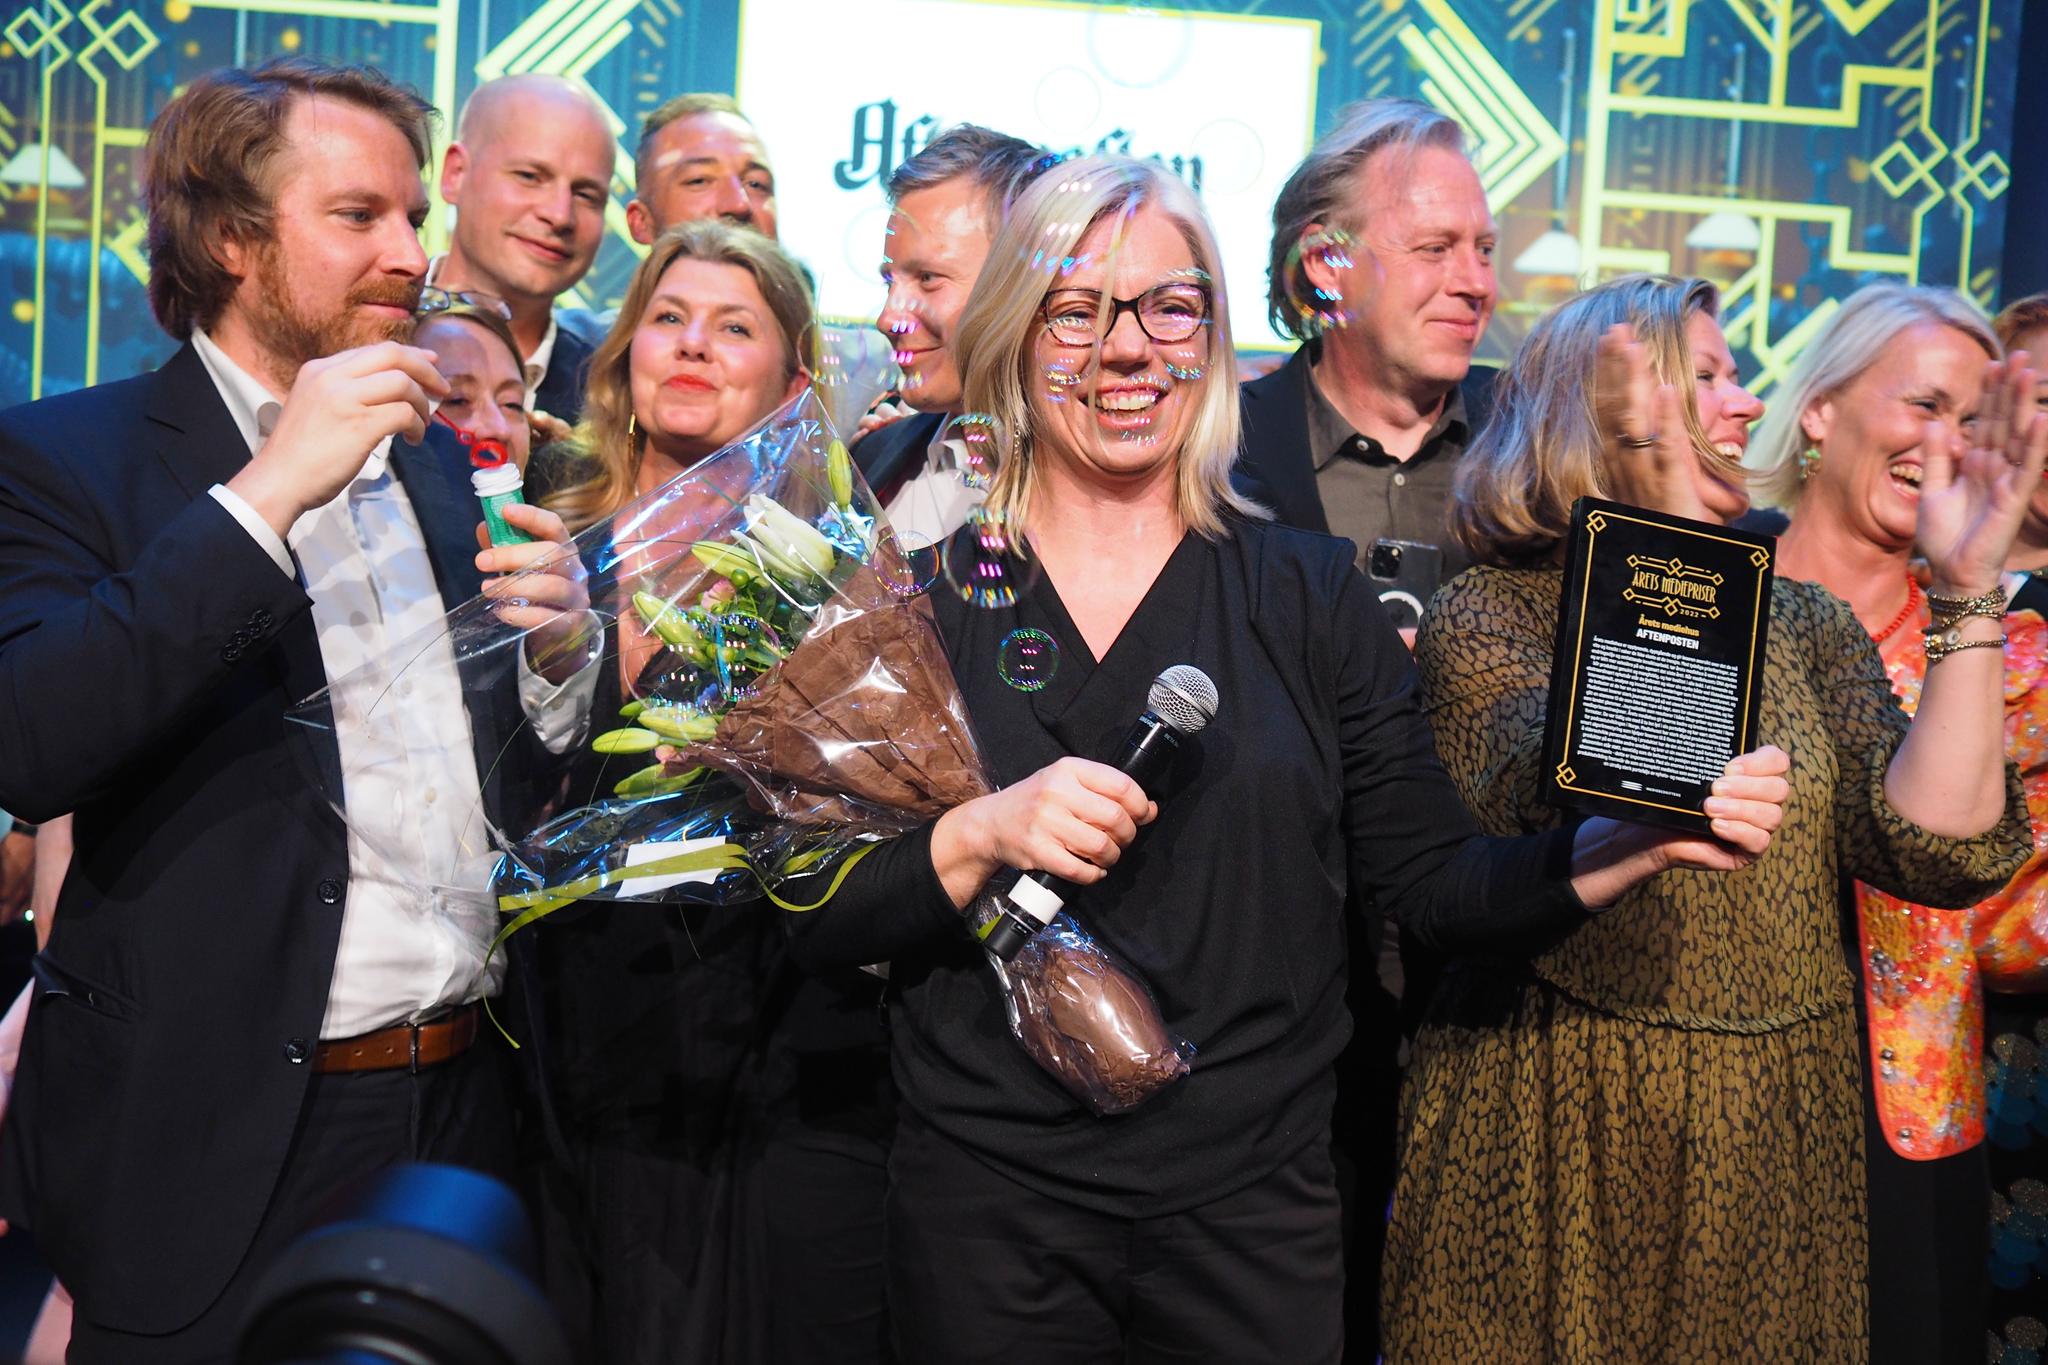 Aftenposten ble kåret til Årets mediehus under mediedagene i Bergen. De andre nominerte i kategorien var Adresseavisen, Bergens tidene, Hallingdølen, TV 2 og NRK.